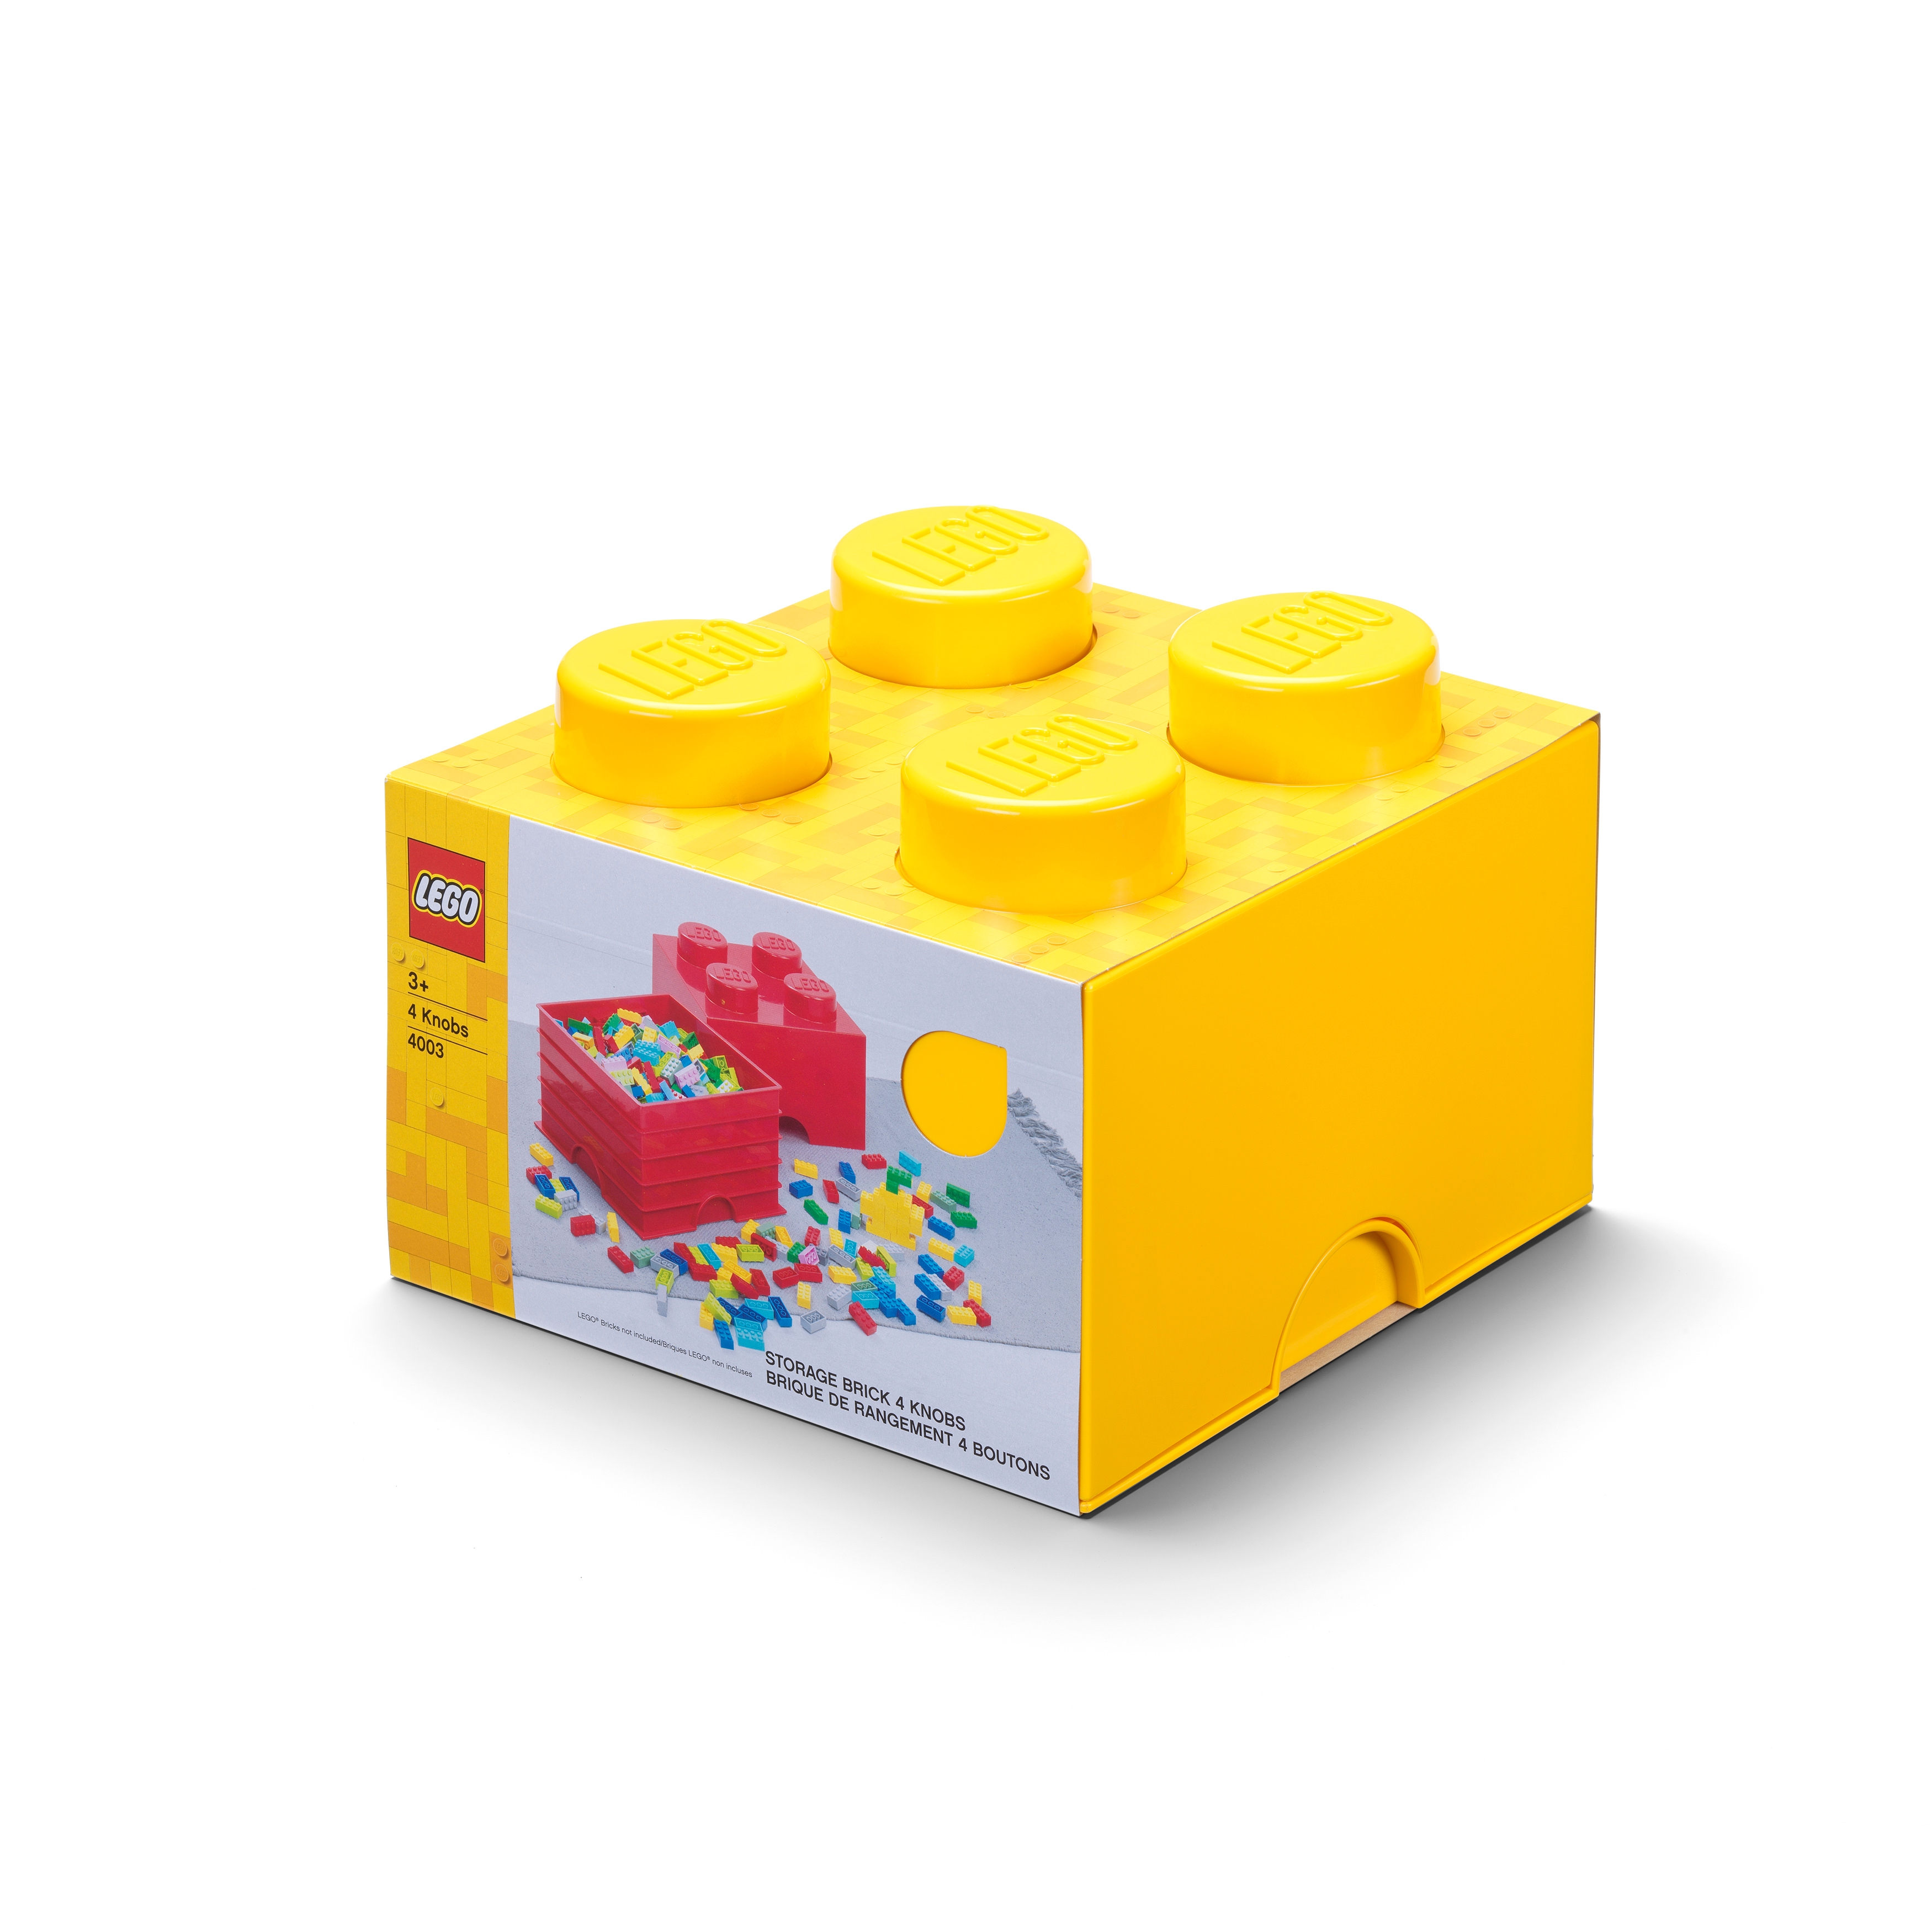 Le rangement des pièces Lego